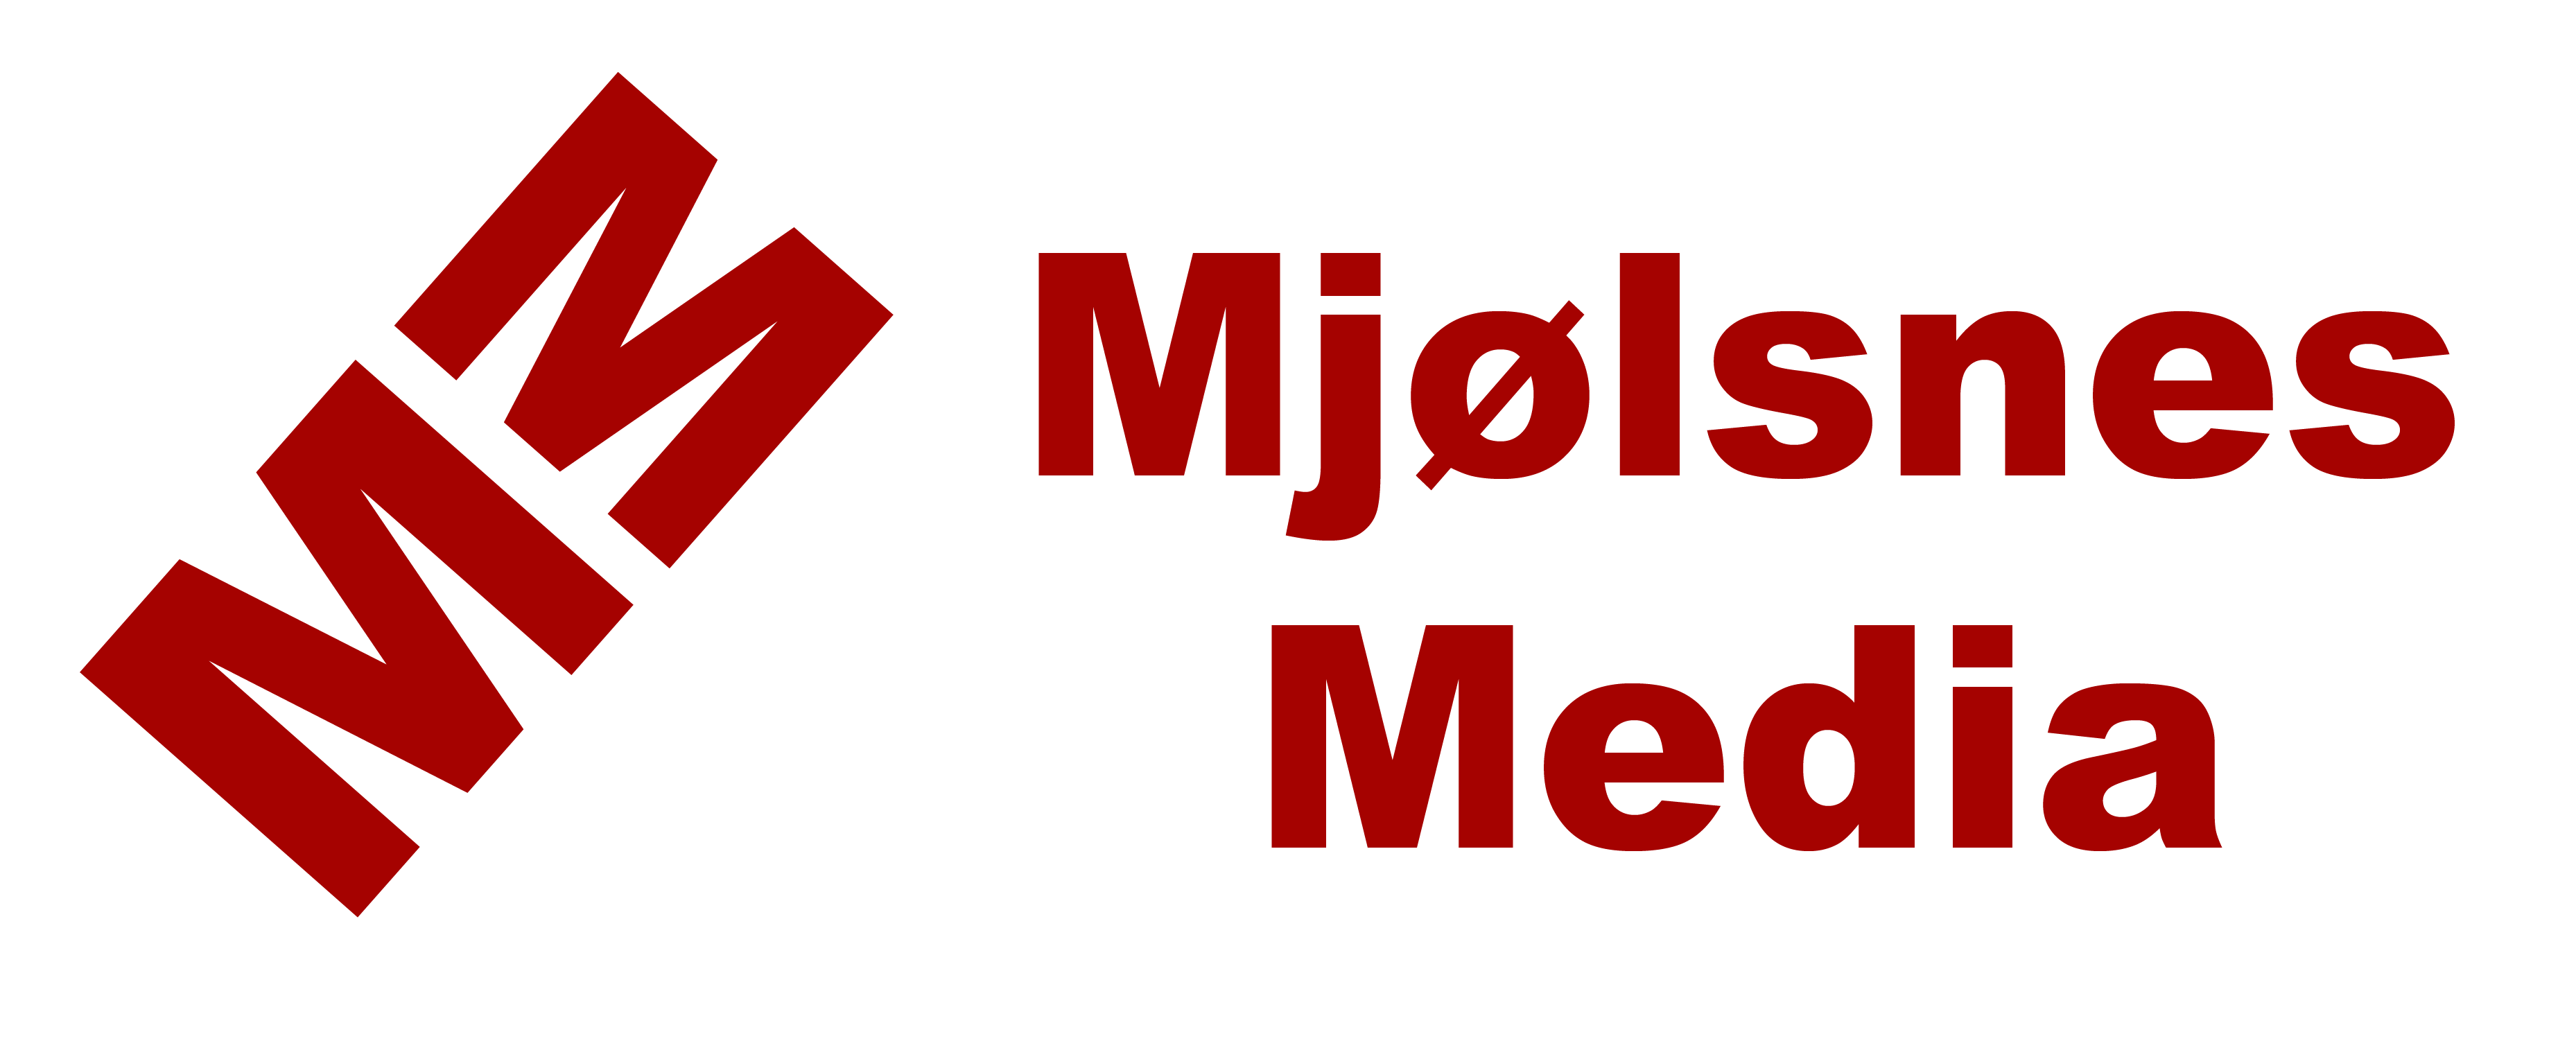 Mjølsnes Media